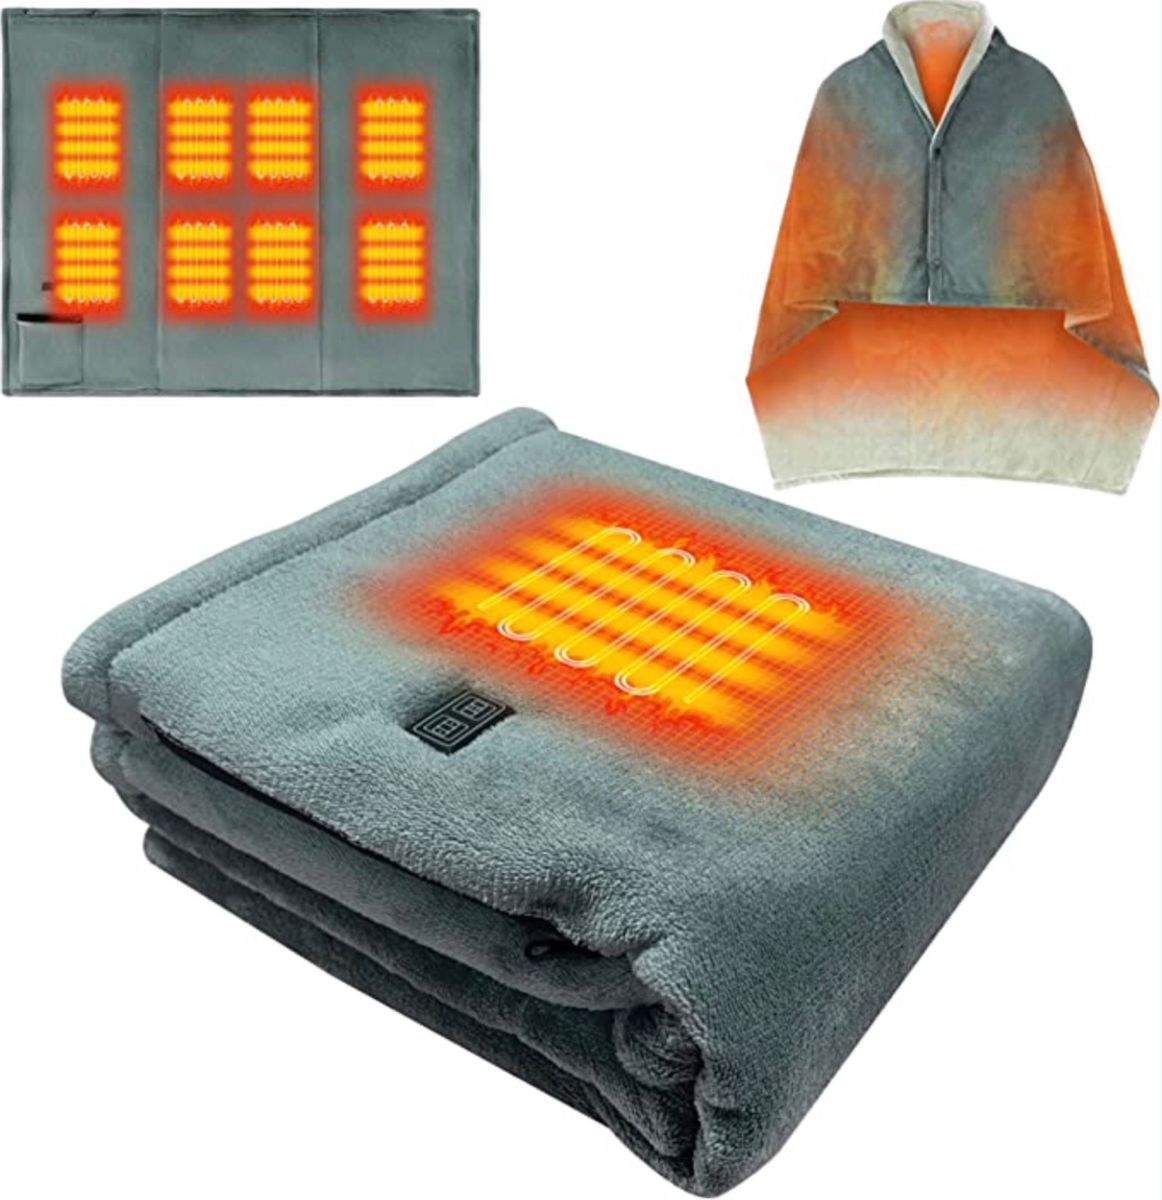 電気毛布 8つヒーター内蔵 3段階温度調節デュアルコントローラーUSB給電 ソフトフランネル素材 暖房過熱保護 日本語説明書